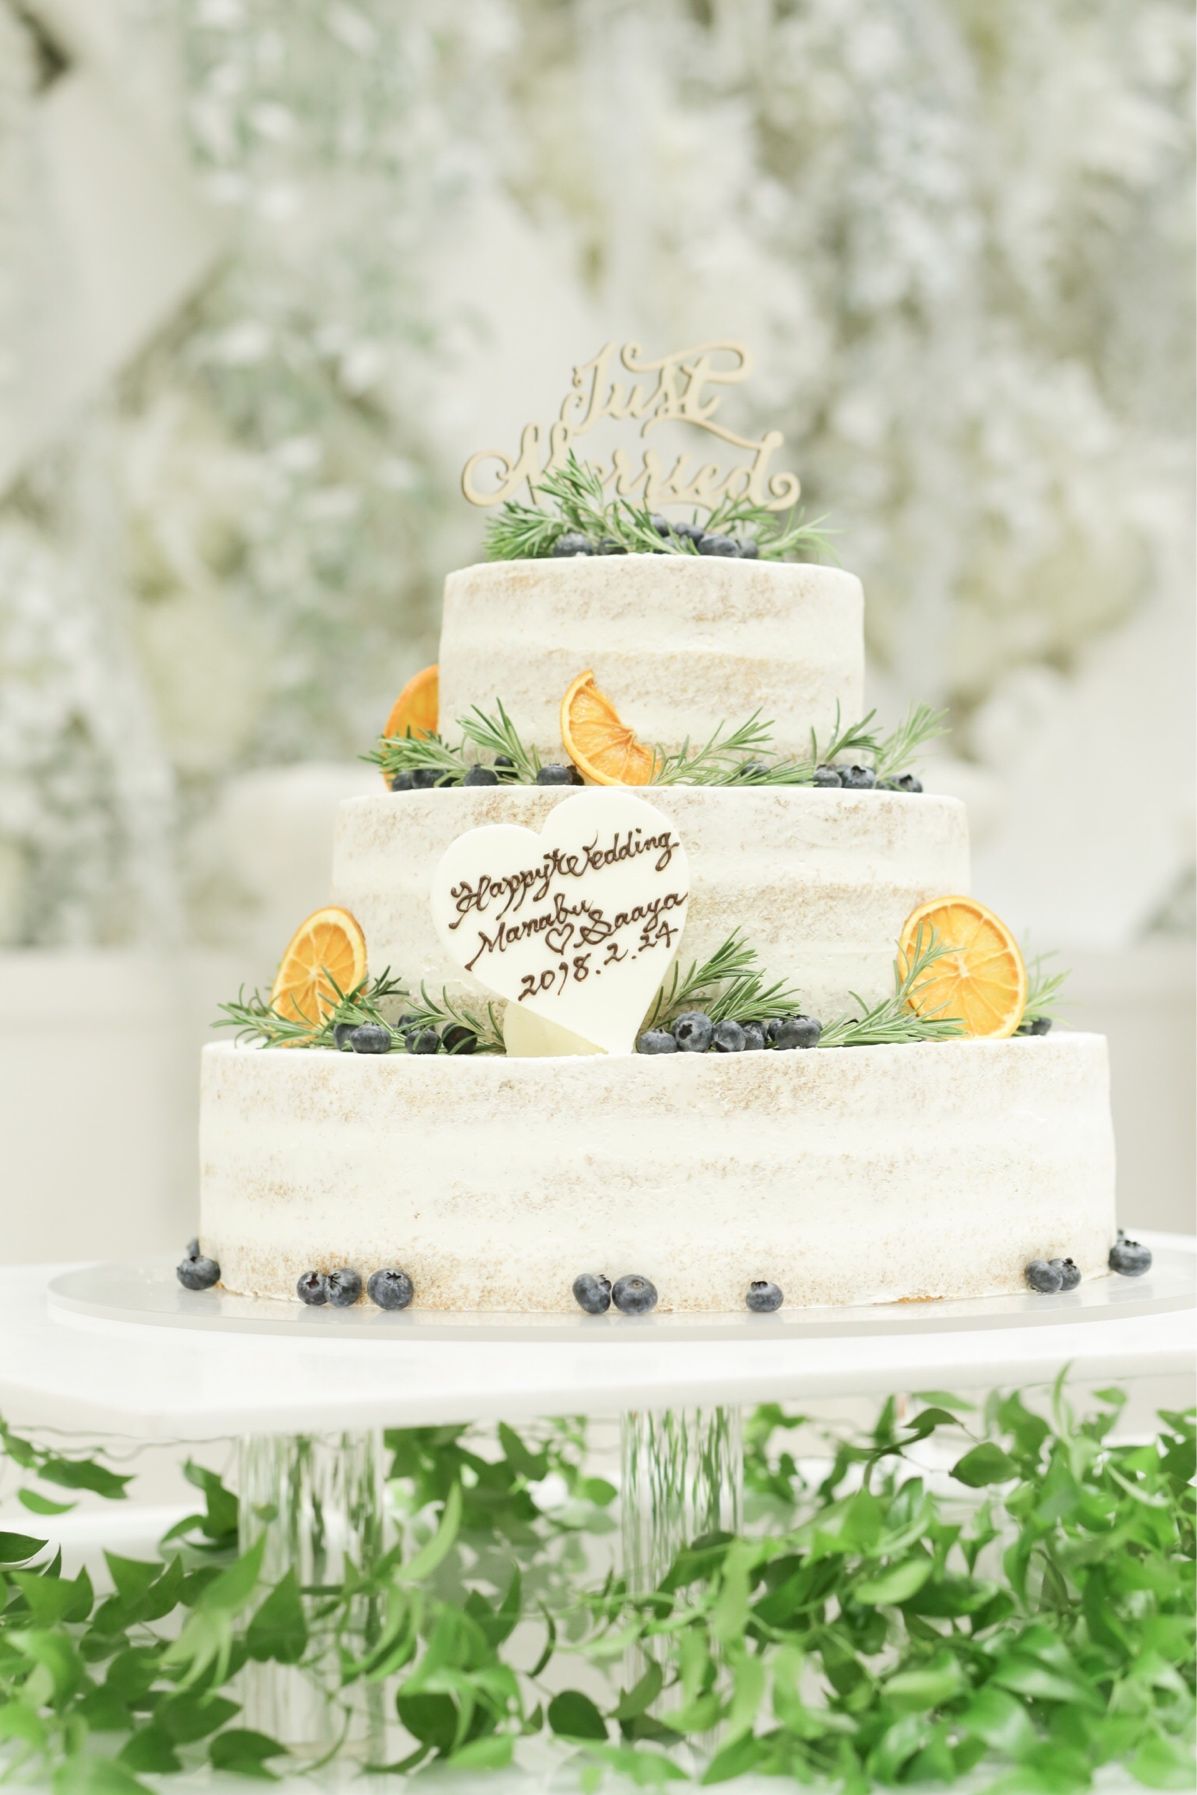 ナチュラル感が素敵 グリーンや花を使ったウェディングケーキ10選 結婚式準備はウェディングニュース